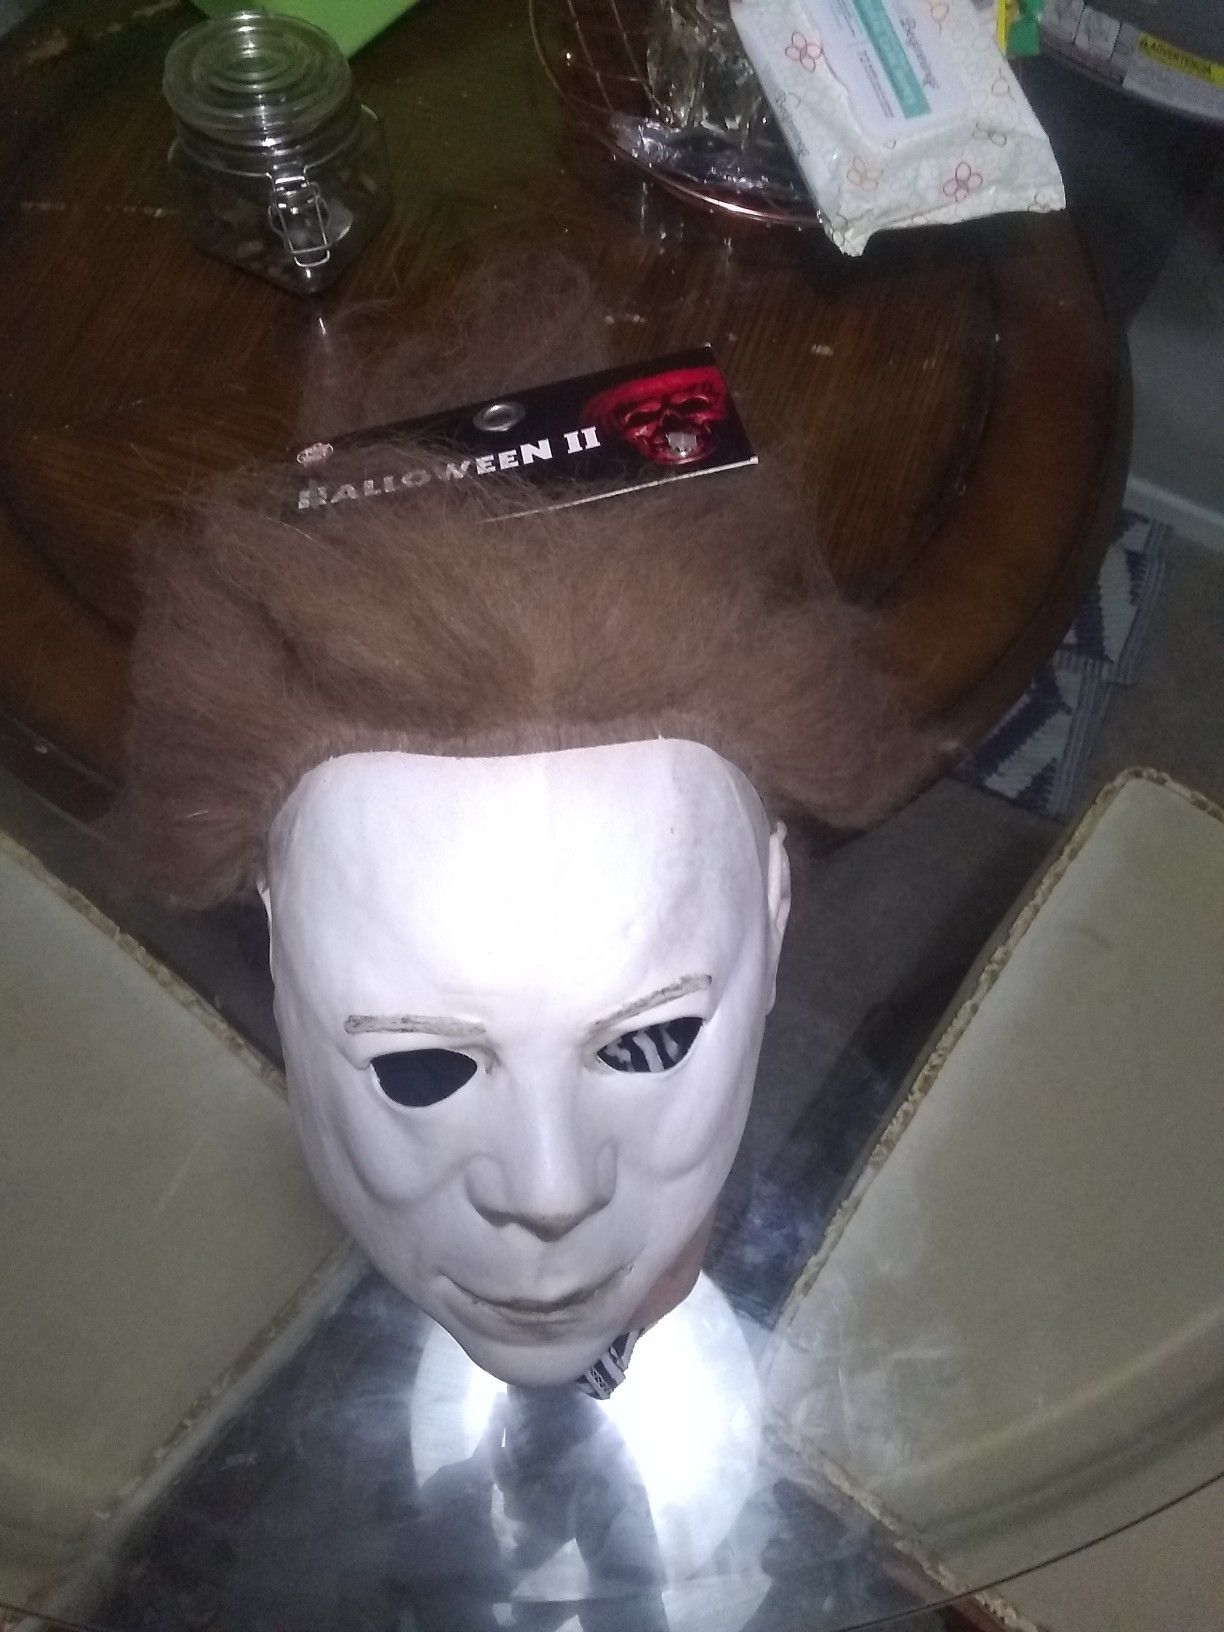 Michael Myer Halloween 2 mask